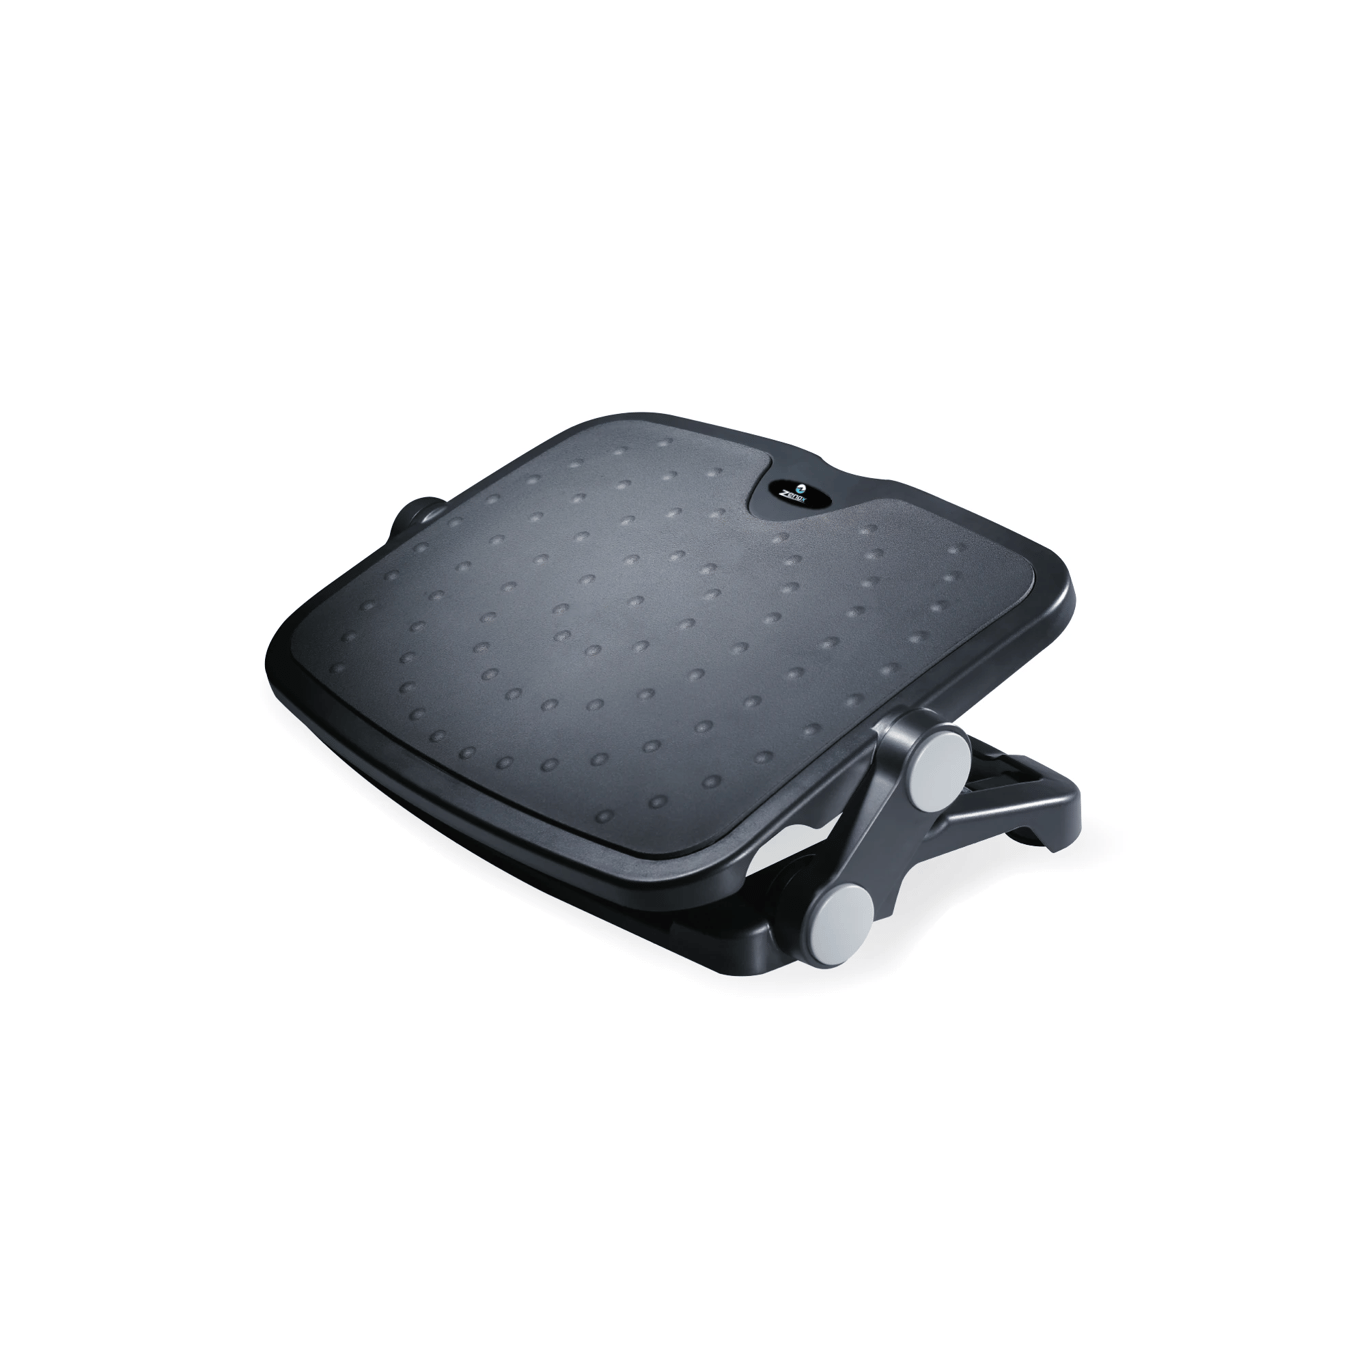 Zenox Luxe Comfort Footrest